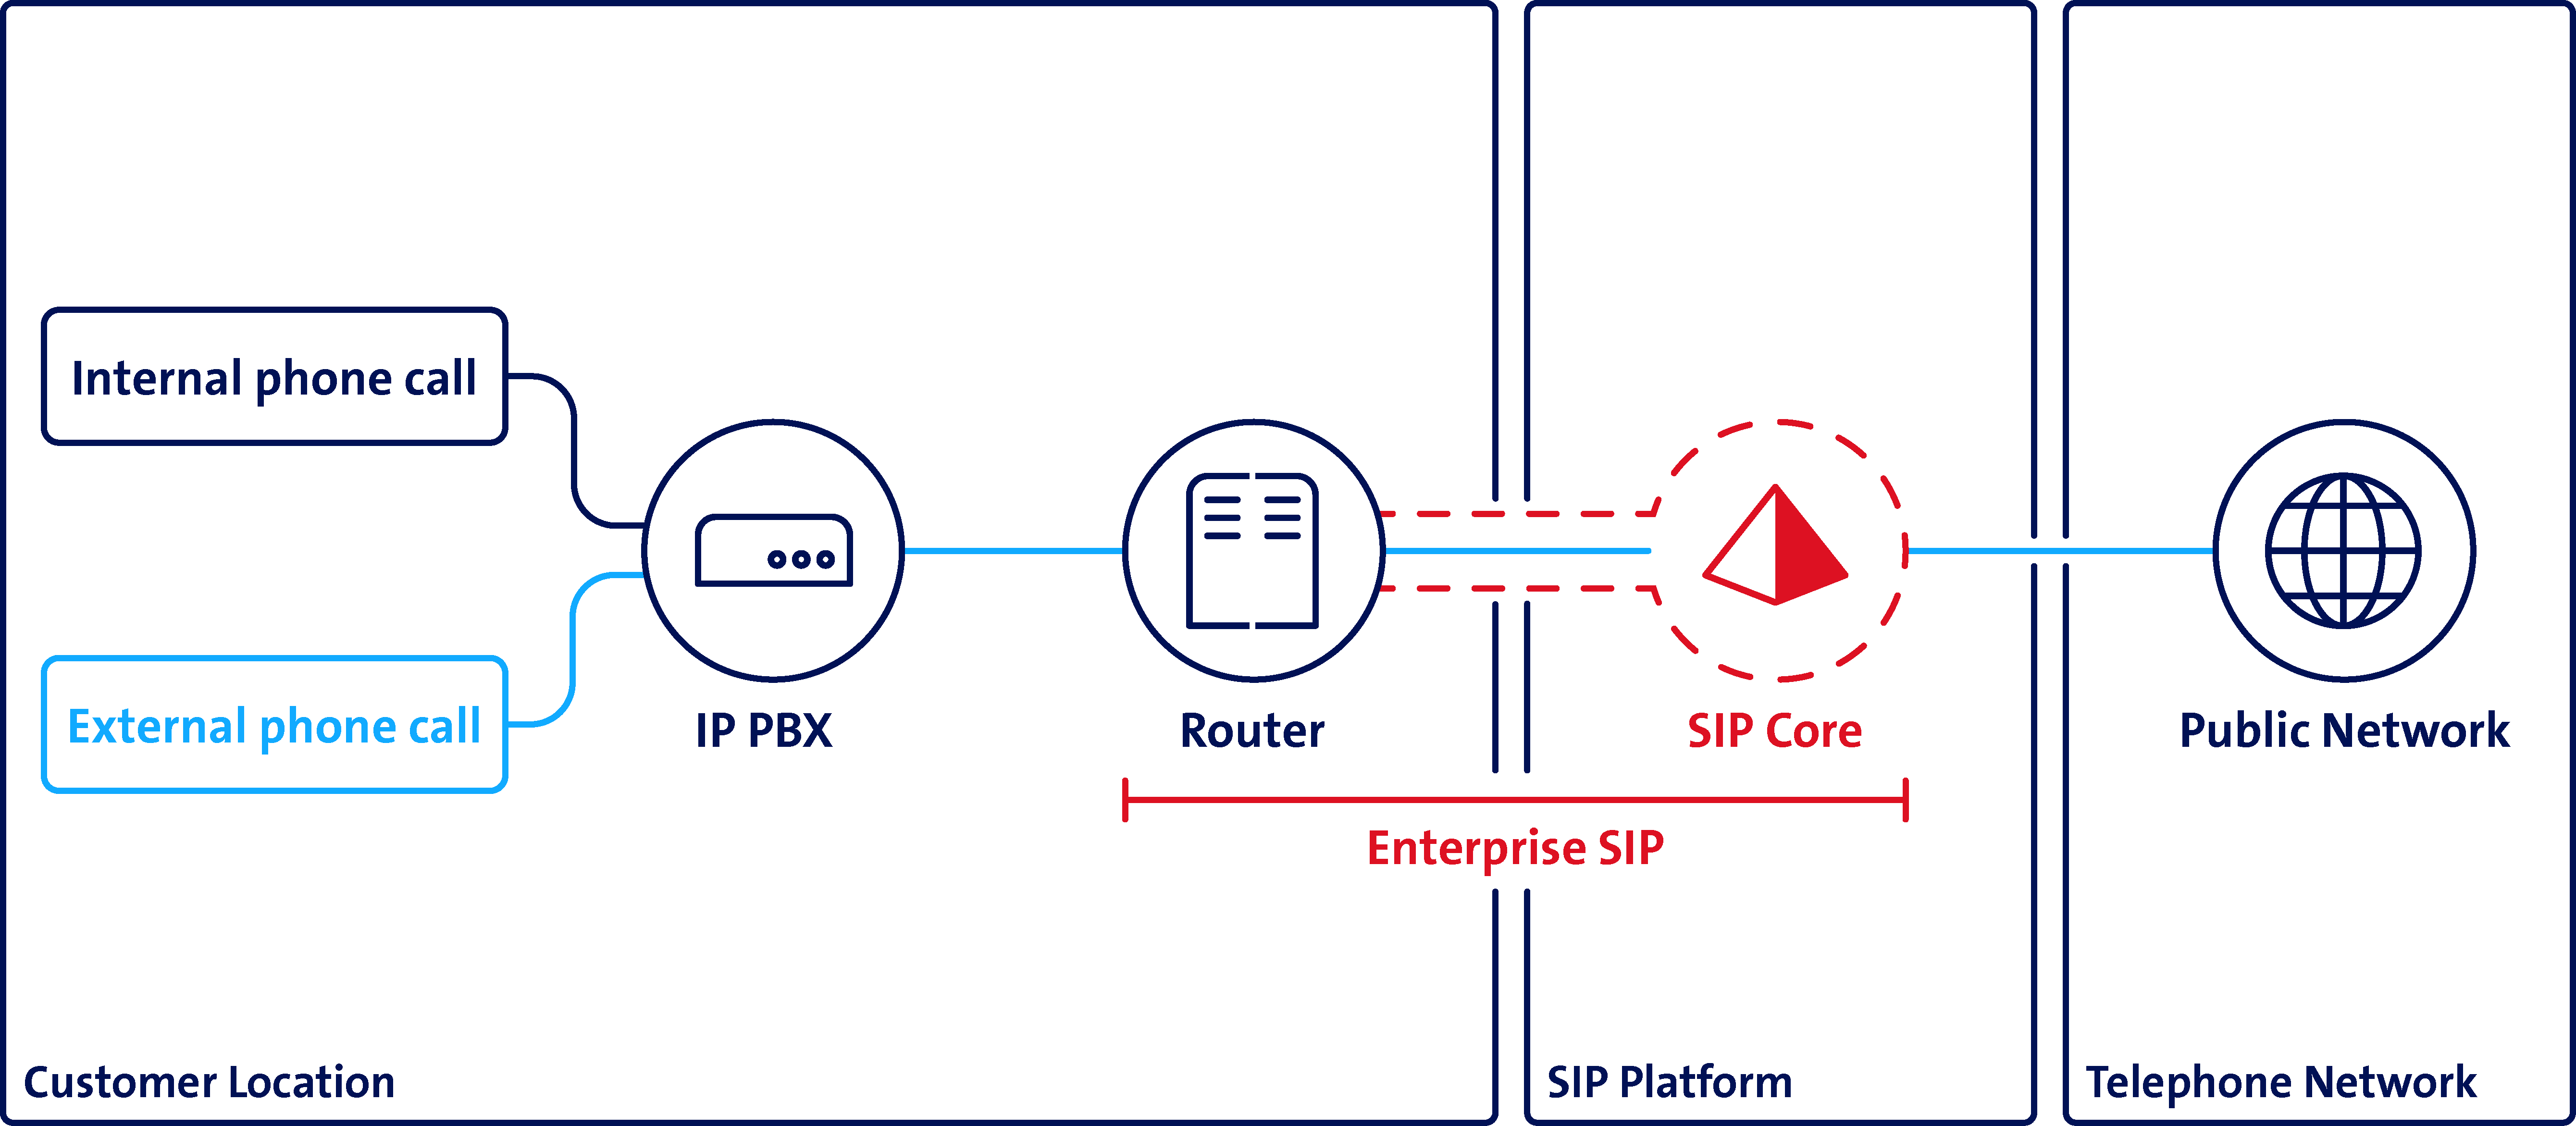 Enterprise SIP: connexion de votre installation de téléphonie locale au réseau téléphonique public. 